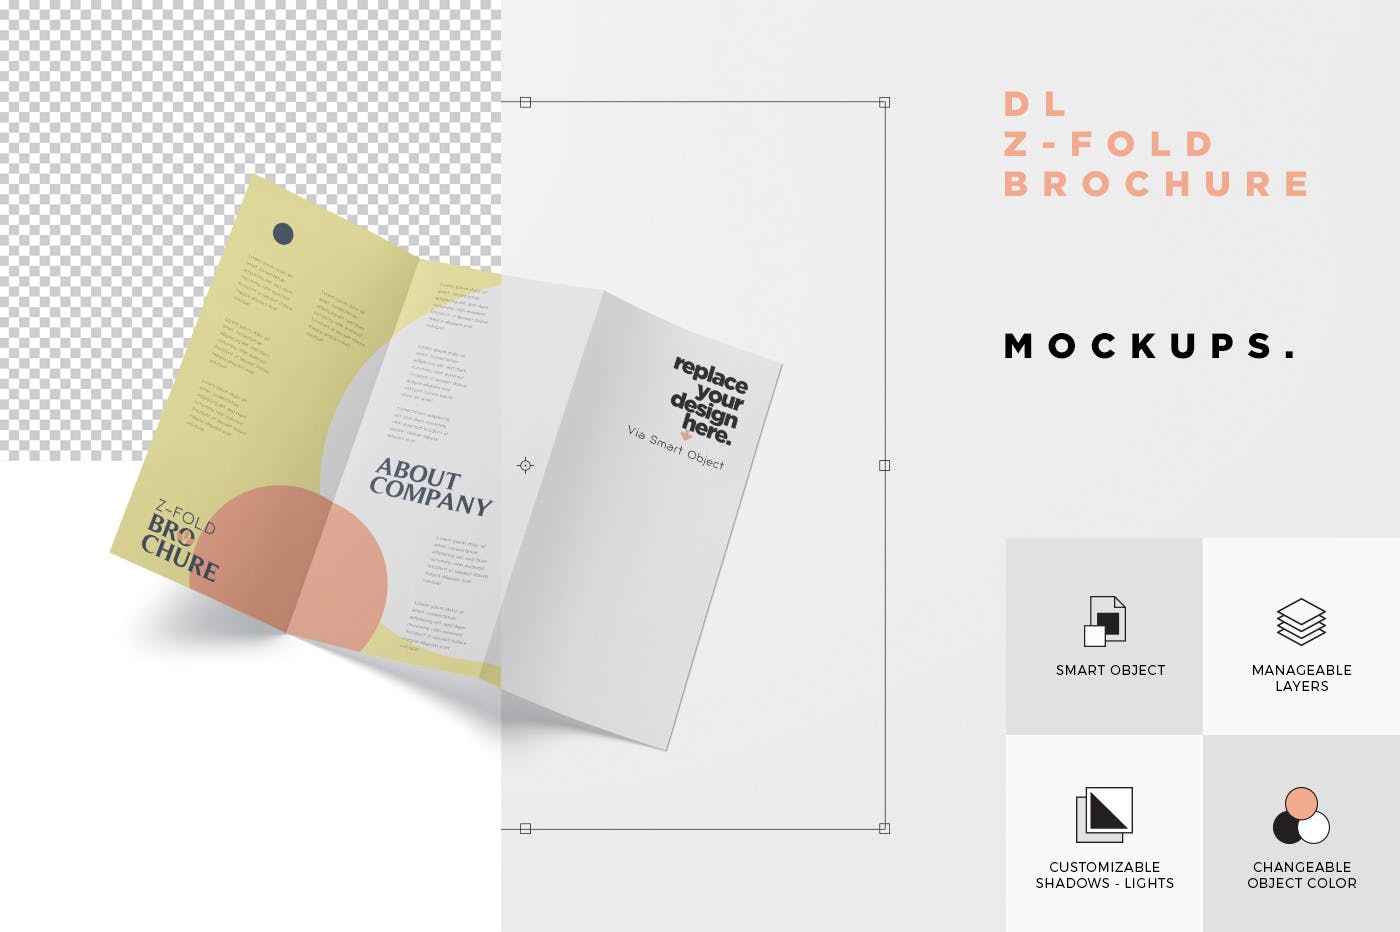 三折页设计风格企业传单/宣传单设计图样机素材中国精选 DL Z-Fold Brochure Mockup – 99 x 210 mm Size插图(7)